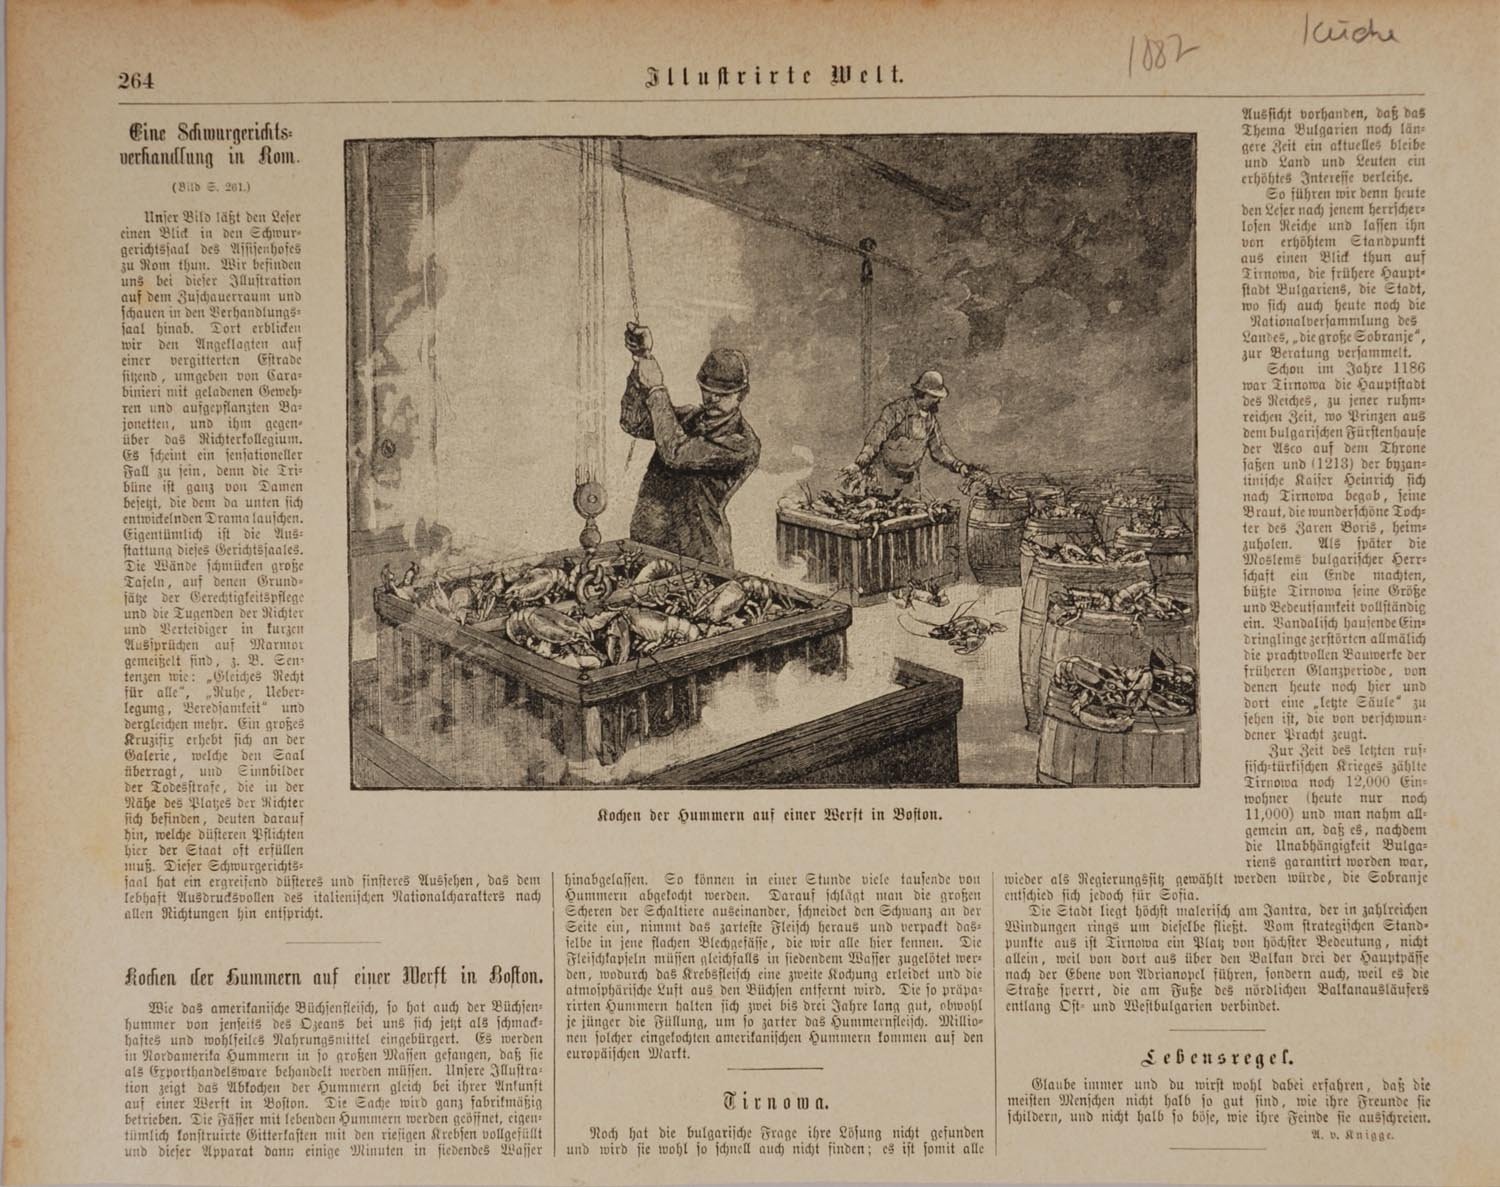 Zeitungsausschnitt "Kochen der Hummern auf einer Werft in Boston" (Stiftung Domäne Dahlem - Landgut und Museum, Weiternutzung nur mit Genehmigung des Museums CC BY-NC-SA)